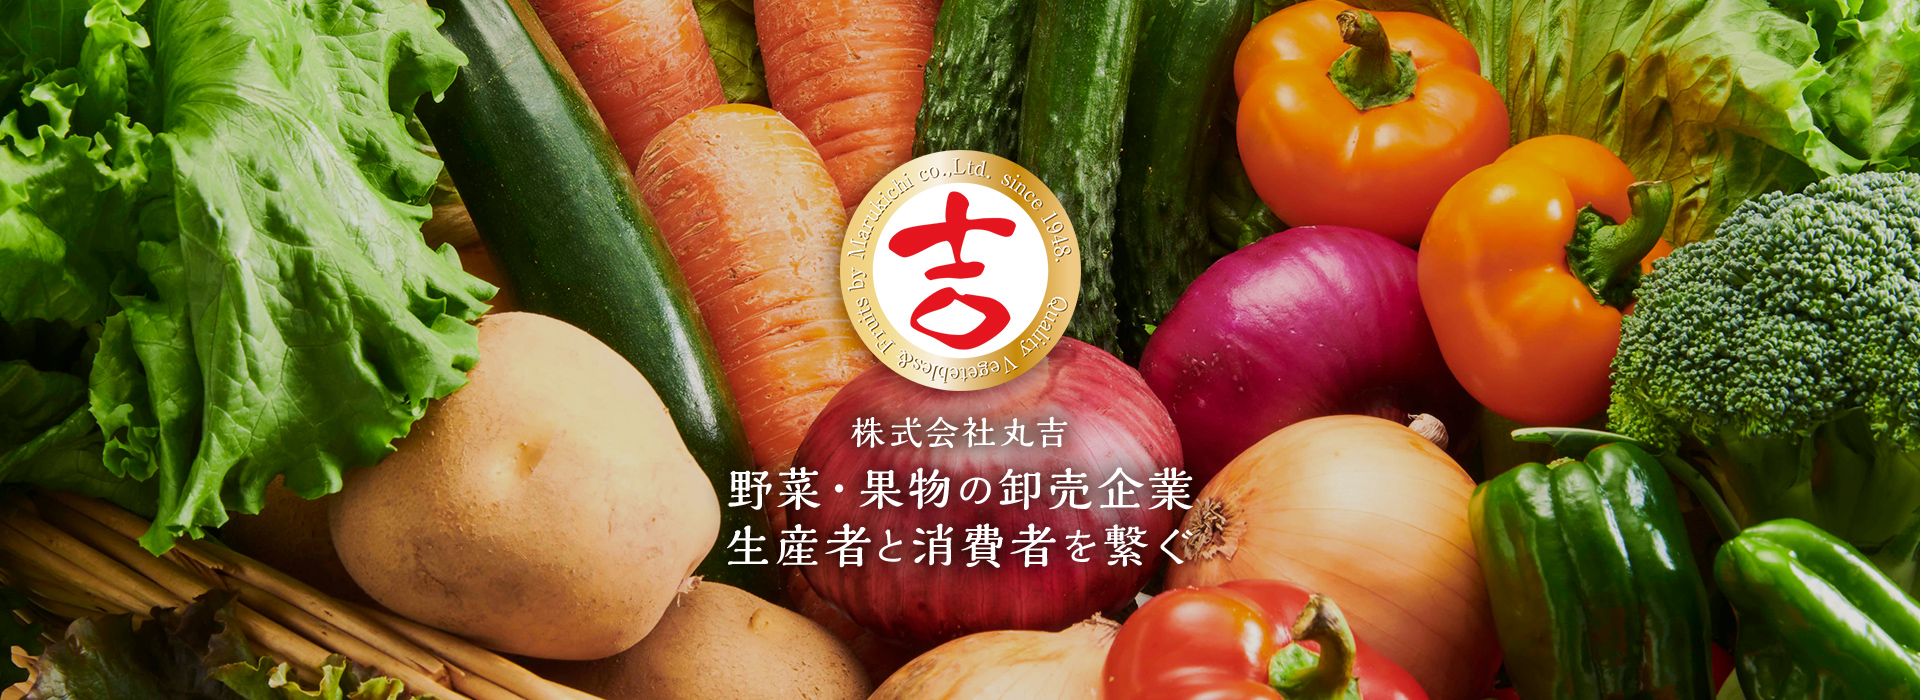 株式会社丸吉 野菜・果物の卸売企業生産者と消費者を繋ぐ